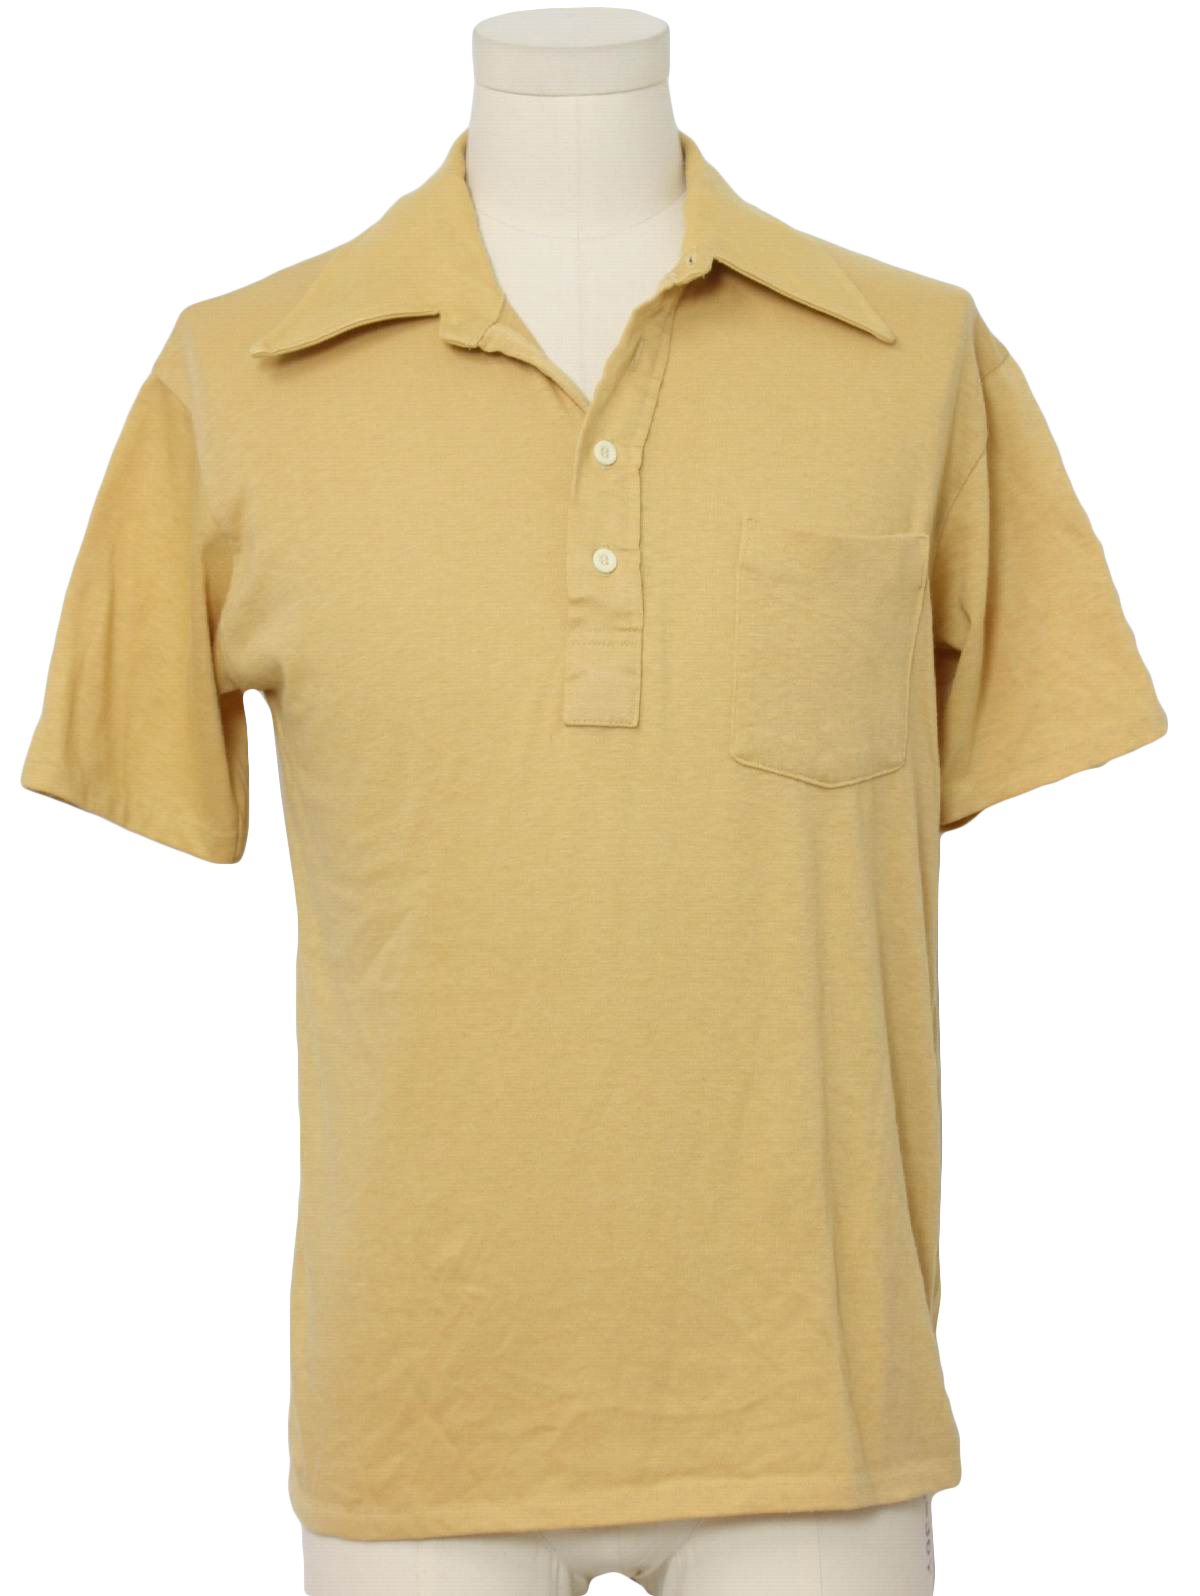 Retro 1970's Shirt (Van Heusen) : 70s -Van Heusen- Mens tan cotton ...